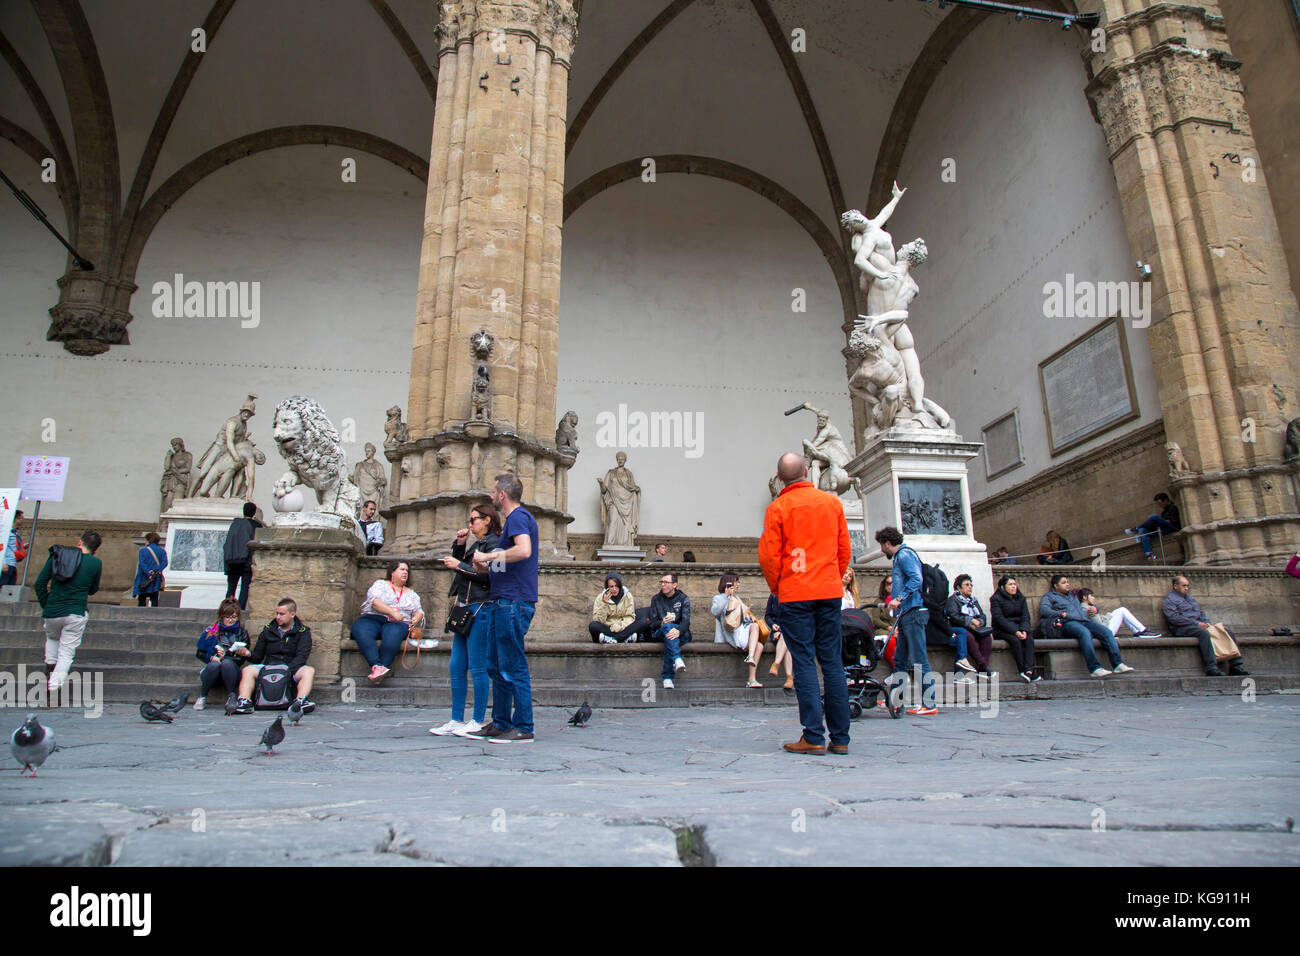 Straßenszene in der Medici piazza zeigt Touristen ausruhen, Tauben, und Skulpturen mit wesentlichen Säulen Stockfoto